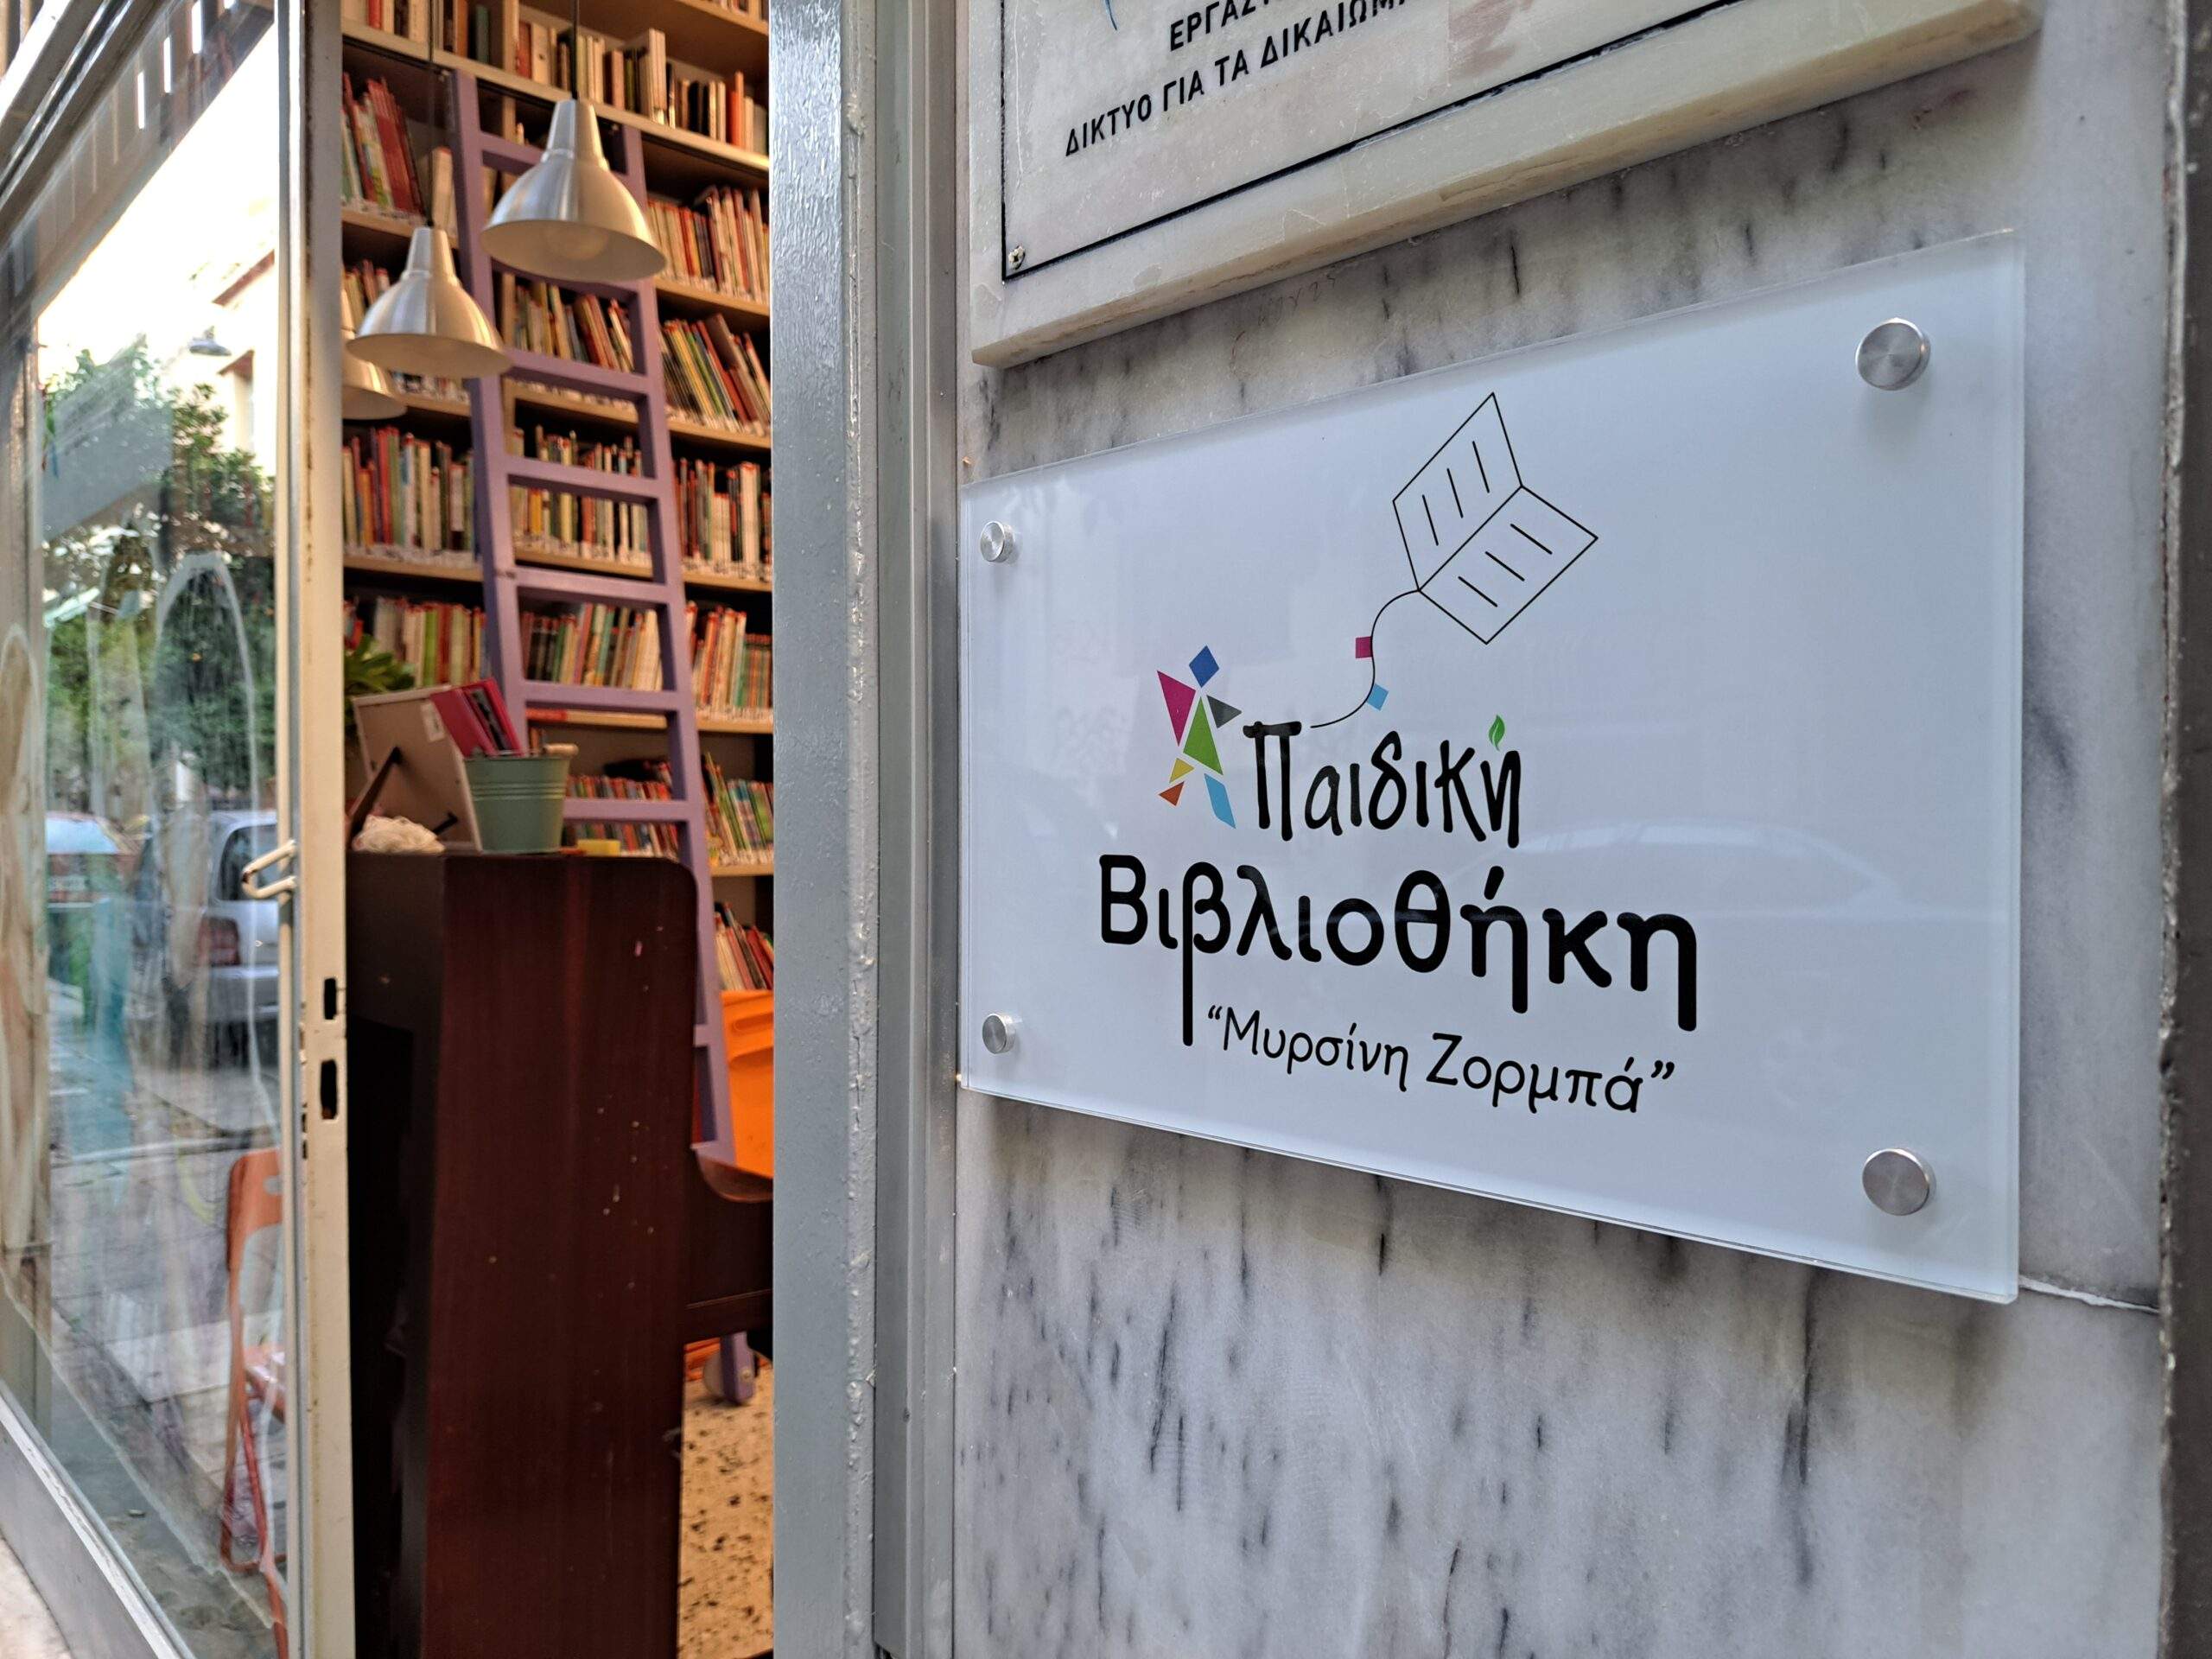 Η Παιδική Βιβλιοθήκη “Μυρσίνη Ζορμπά” υποδέχθηκε μικρούς και μεγάλους σε ένα διήμερο γεμάτο βιβλιοδράσεις!